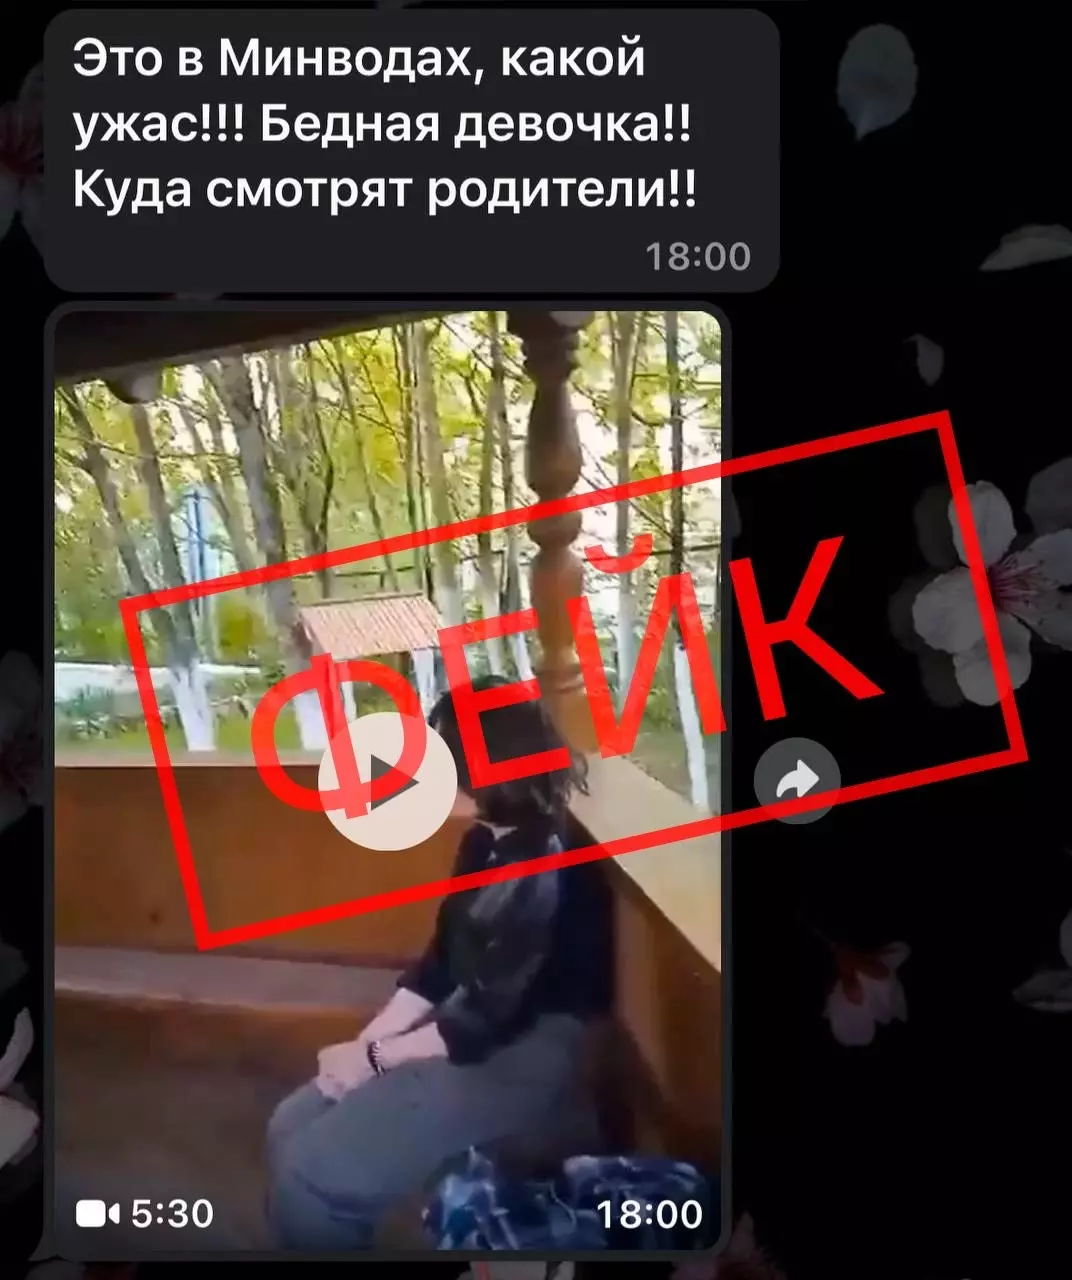 Фейком оказалась информация об избиении девочки-подростка на Ставрополье0